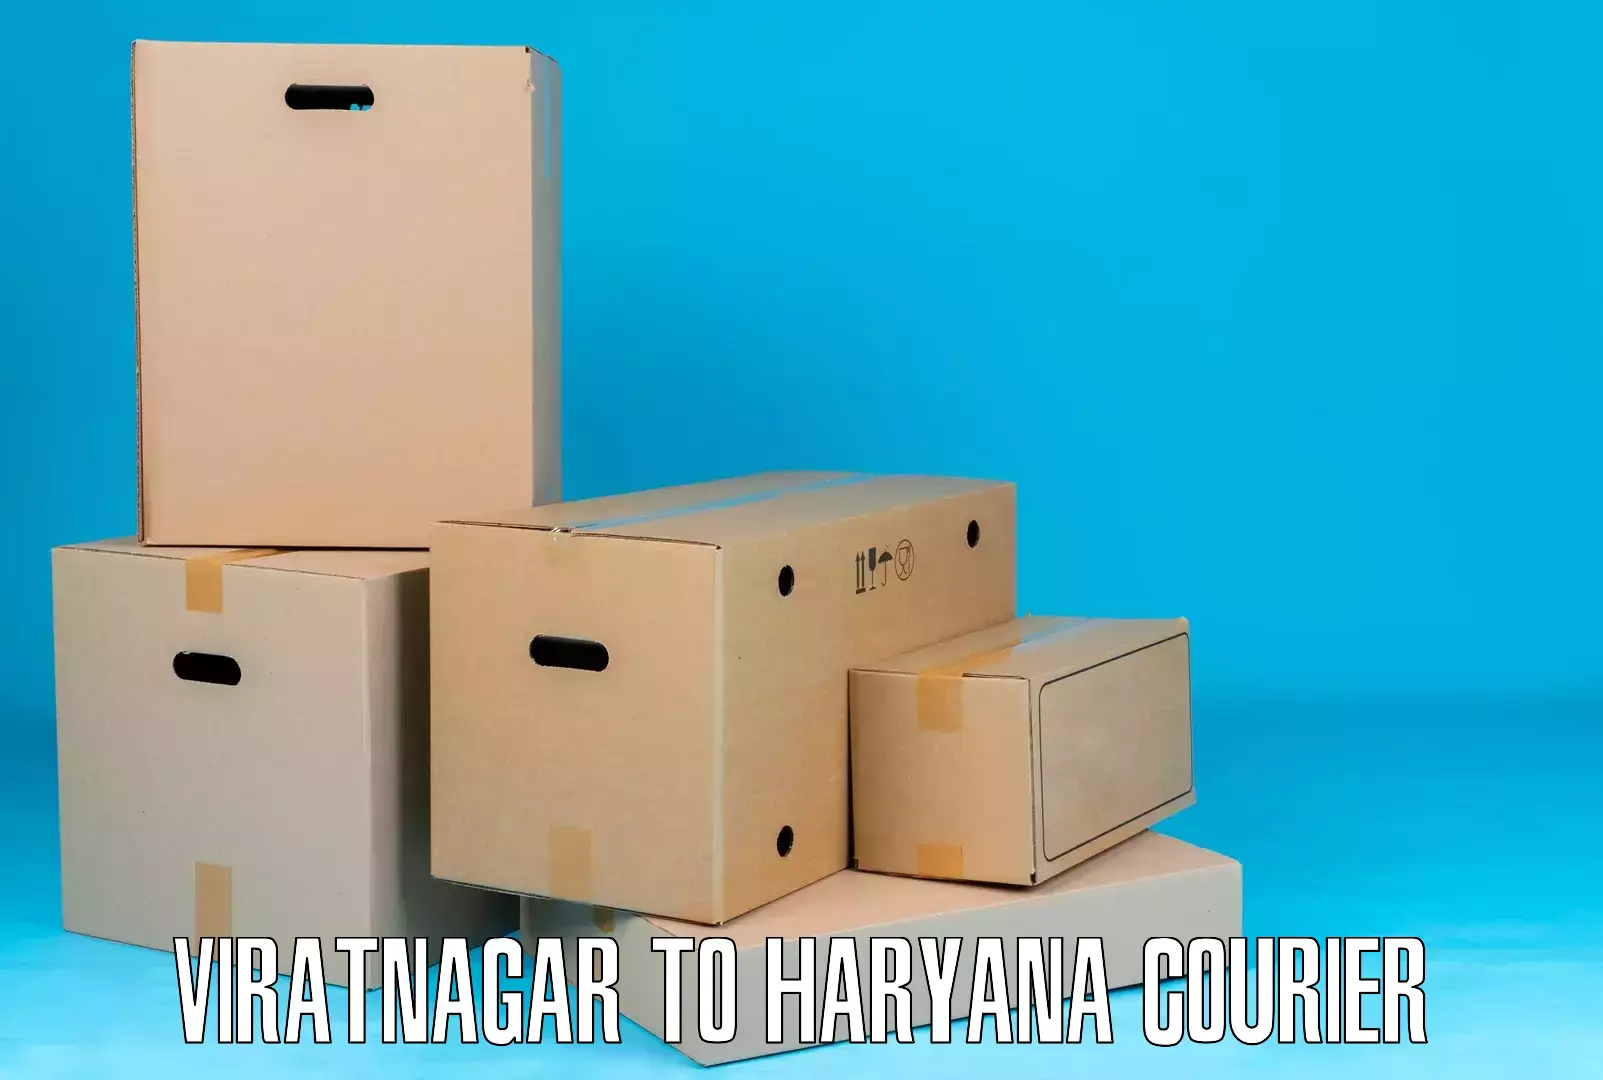 Personalized courier solutions Viratnagar to Gohana